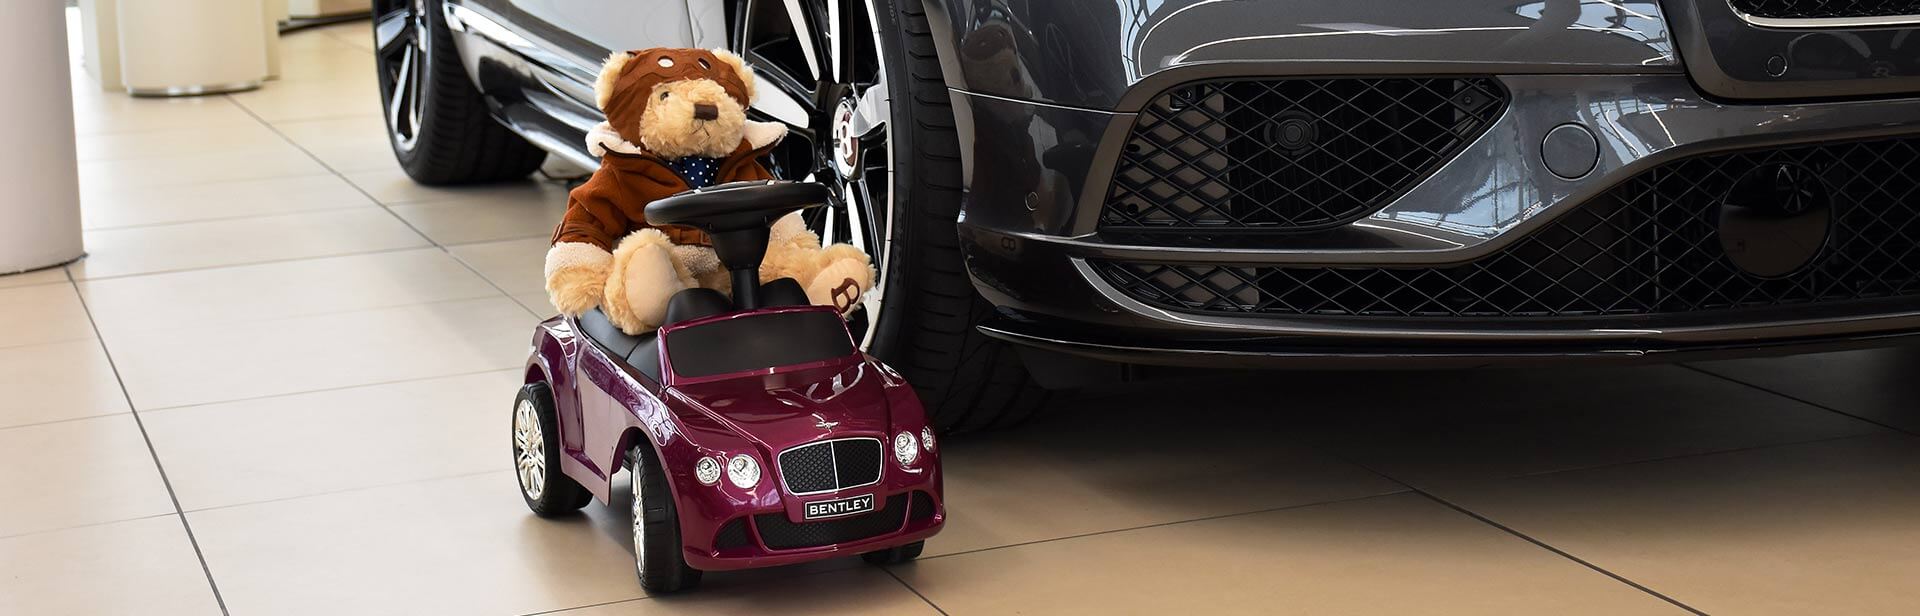 Spielzeugauto mit Teddy